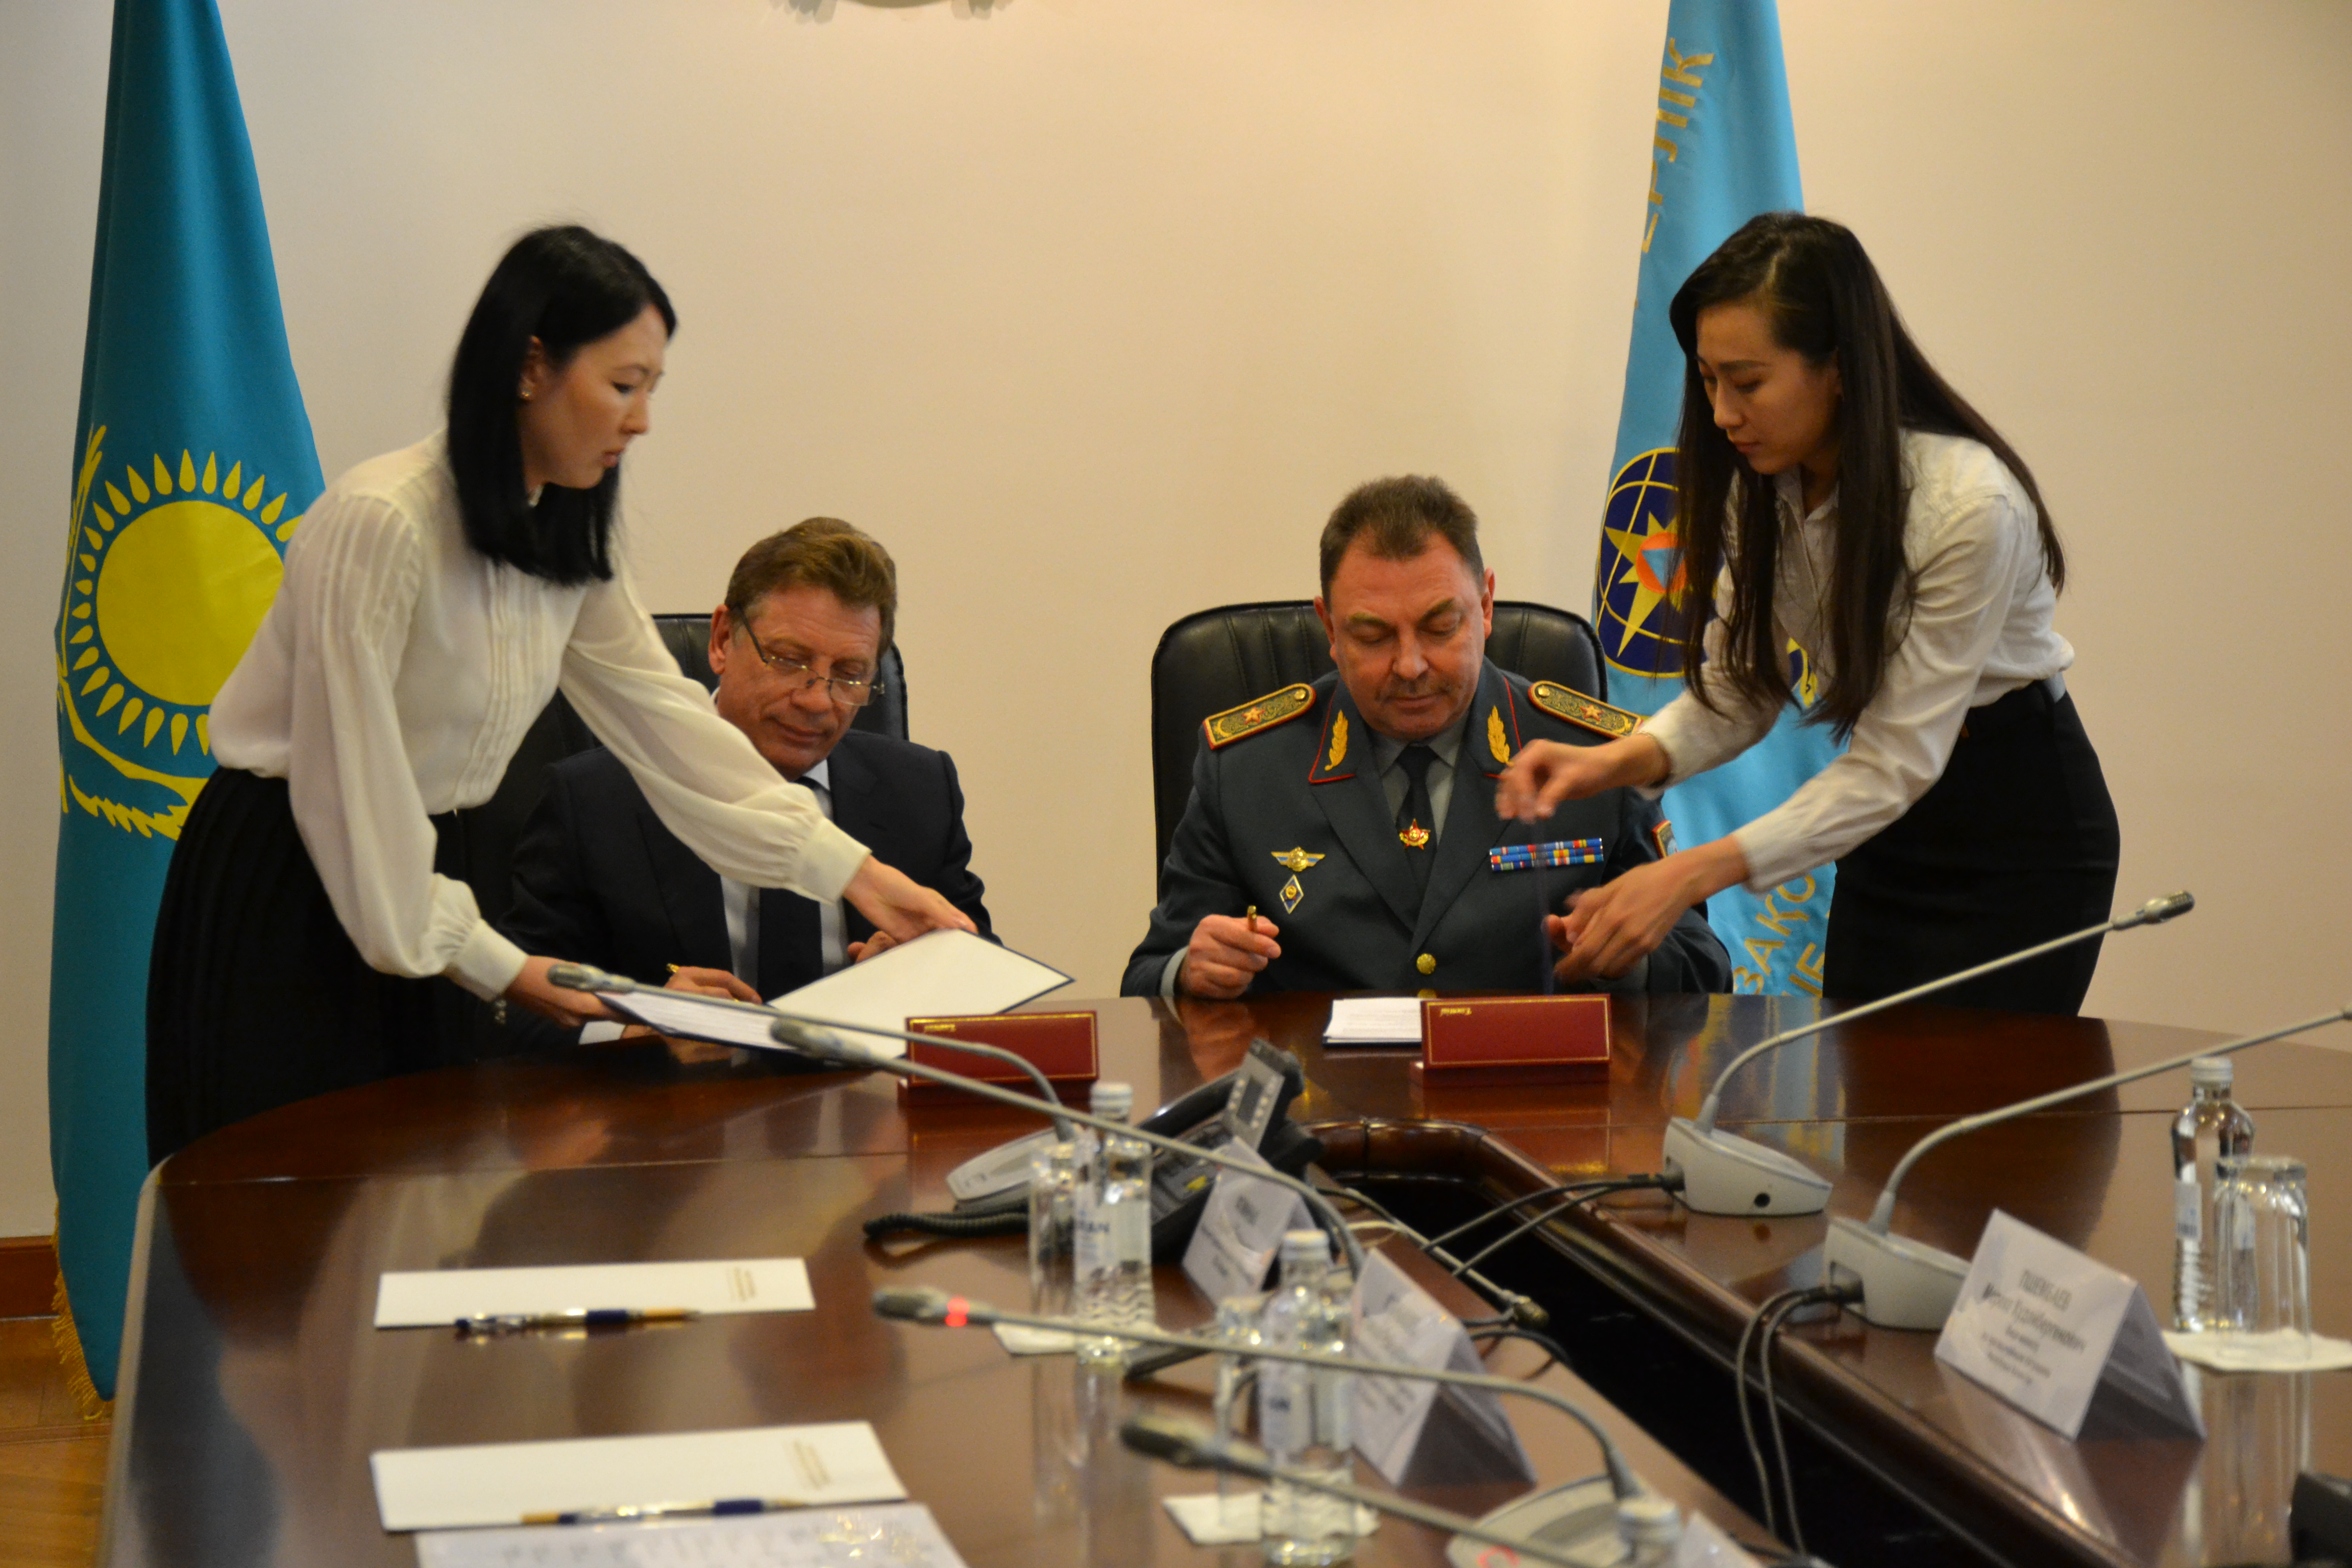 Министерство по чрезвычайным ситуациям Республики Казахстан и ТОО «Казцинк» запустили цифровой проект по промышленной безопасности